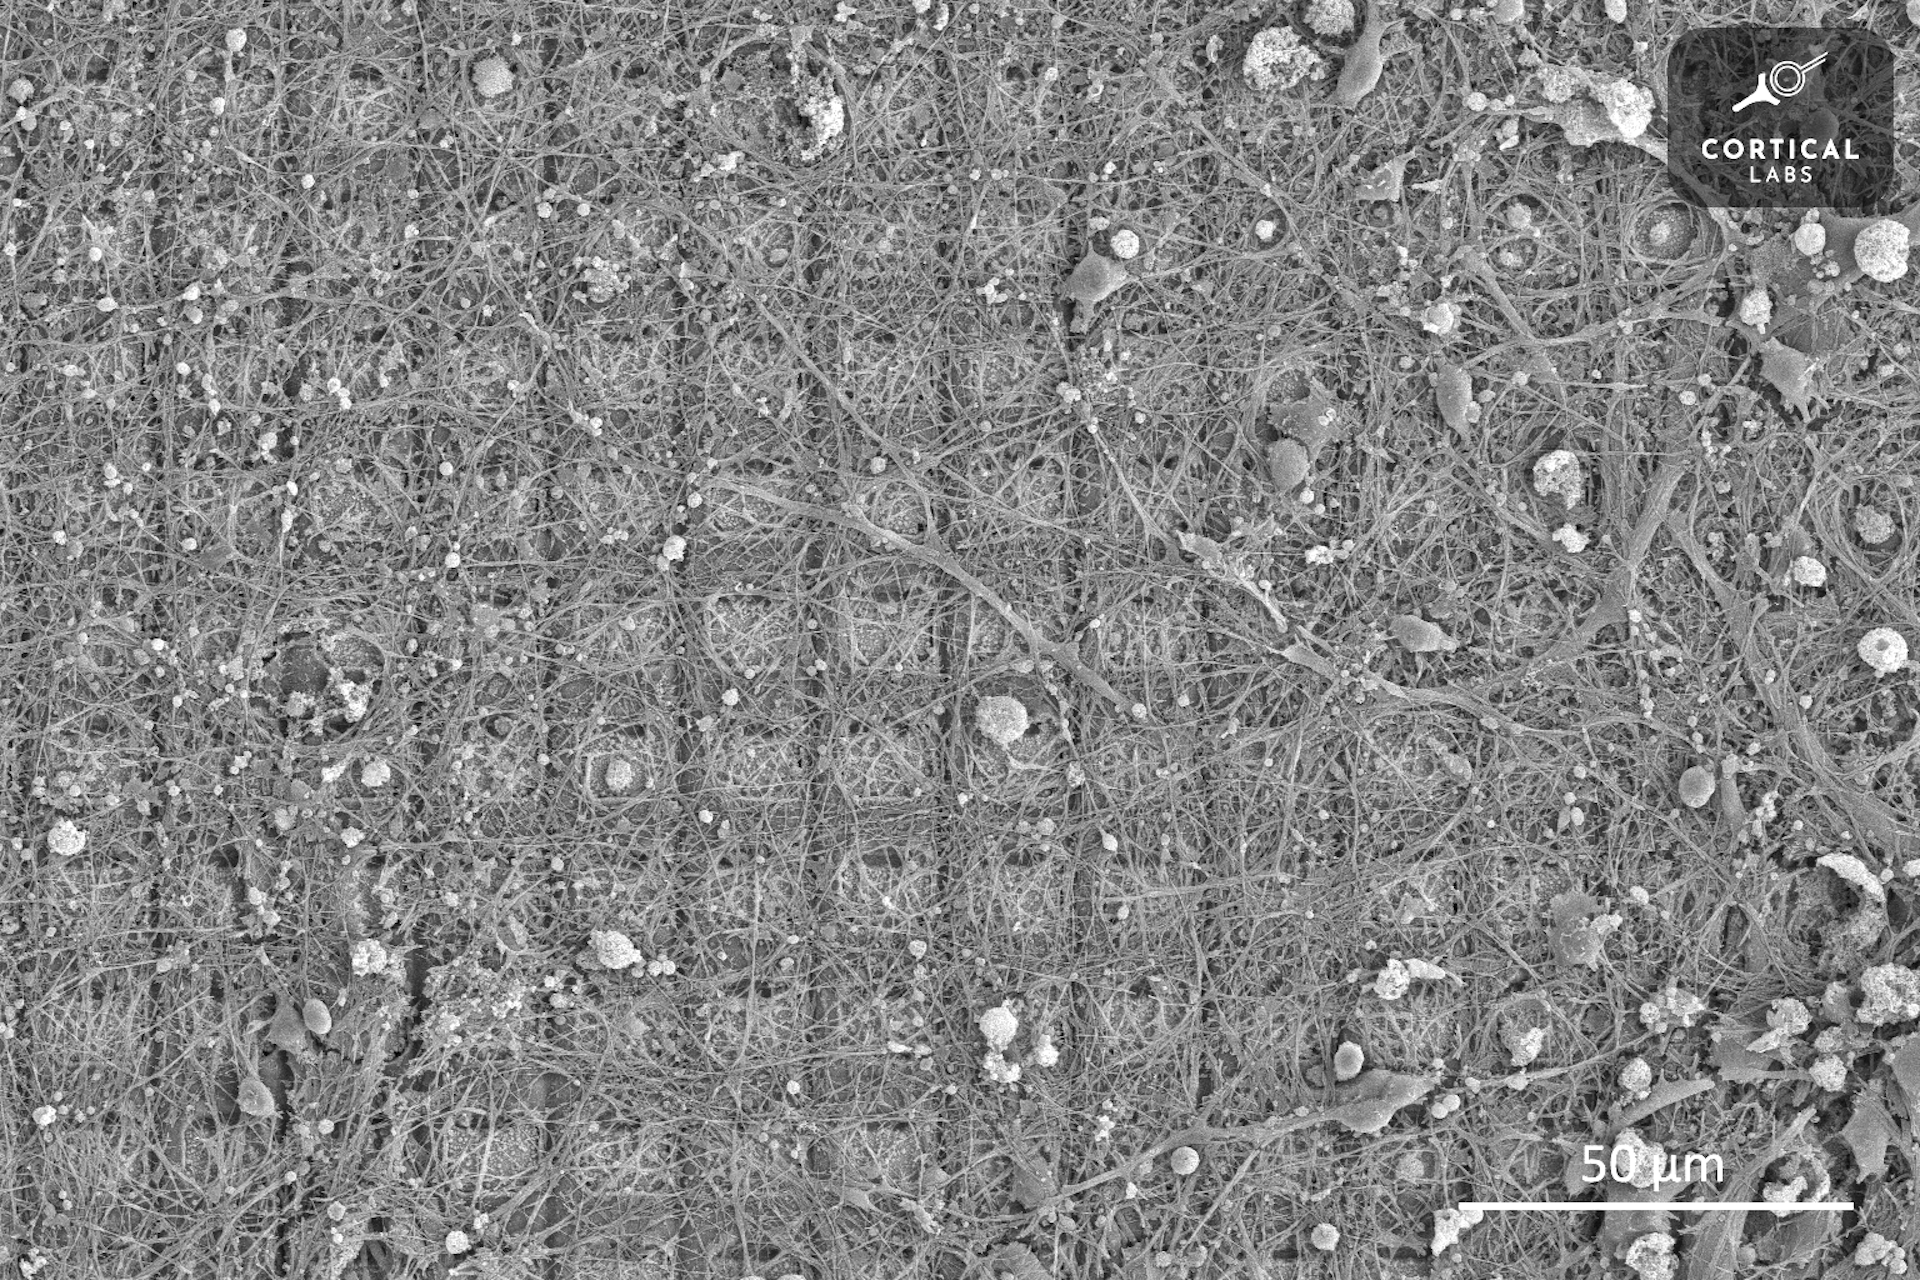 显微镜图像显示了一个正方形网格，上面覆盖着不规则生长的链状神经元。